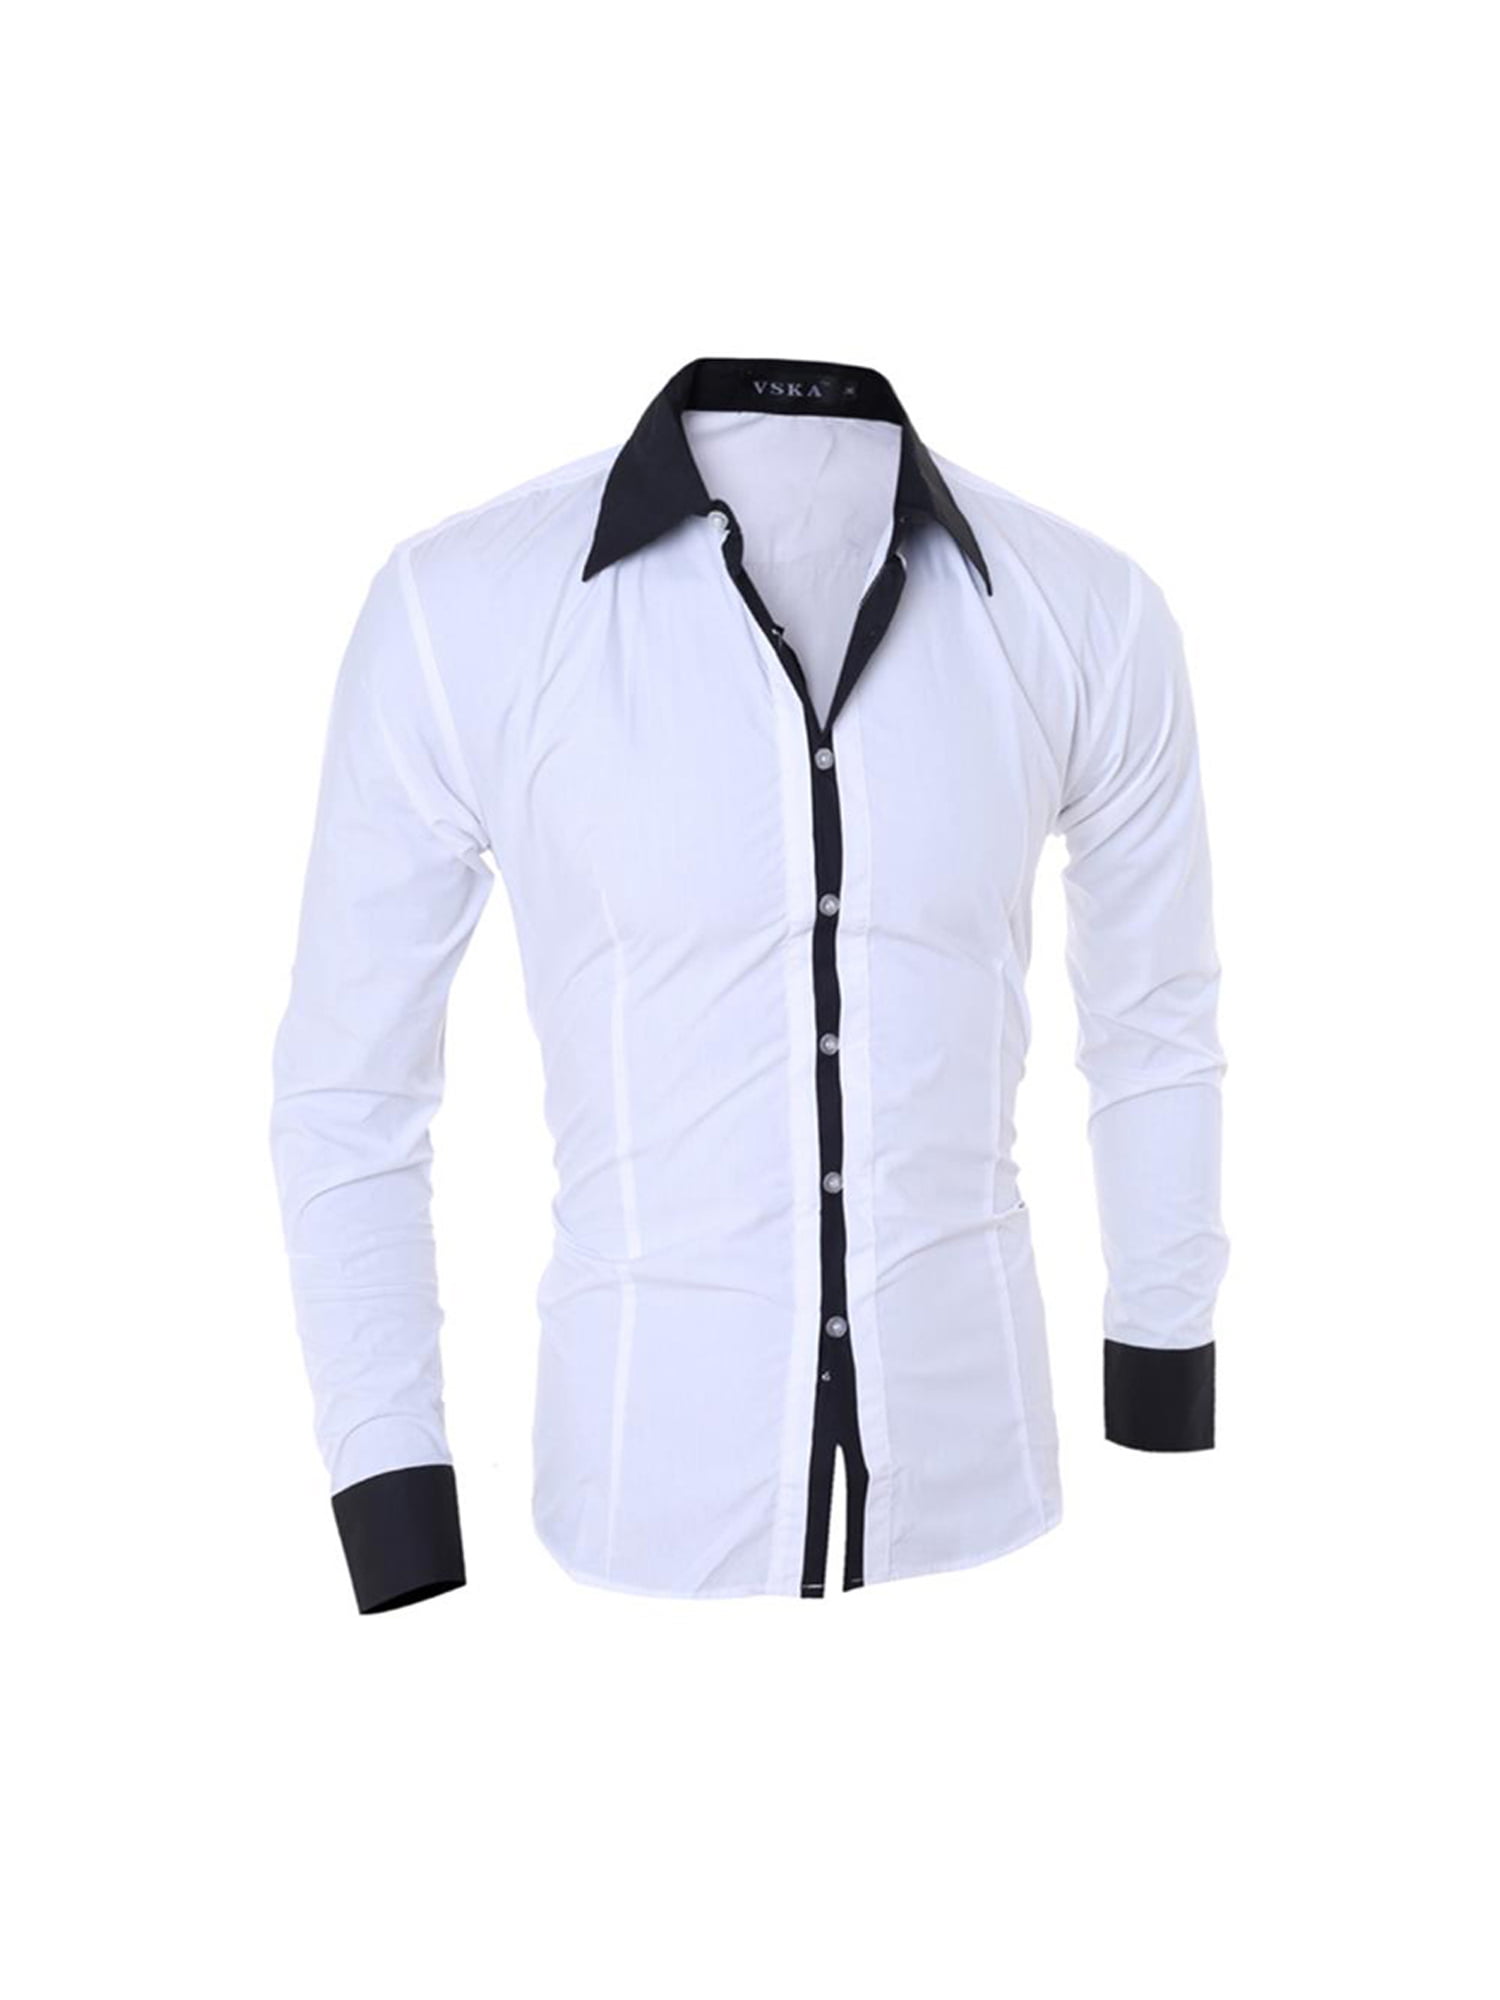 Inspireren Weg hardop Pfysire Mens Lapel Long Sleeve Button Up Dress Shirts Slim Fit Work Tops  White M - Walmart.com